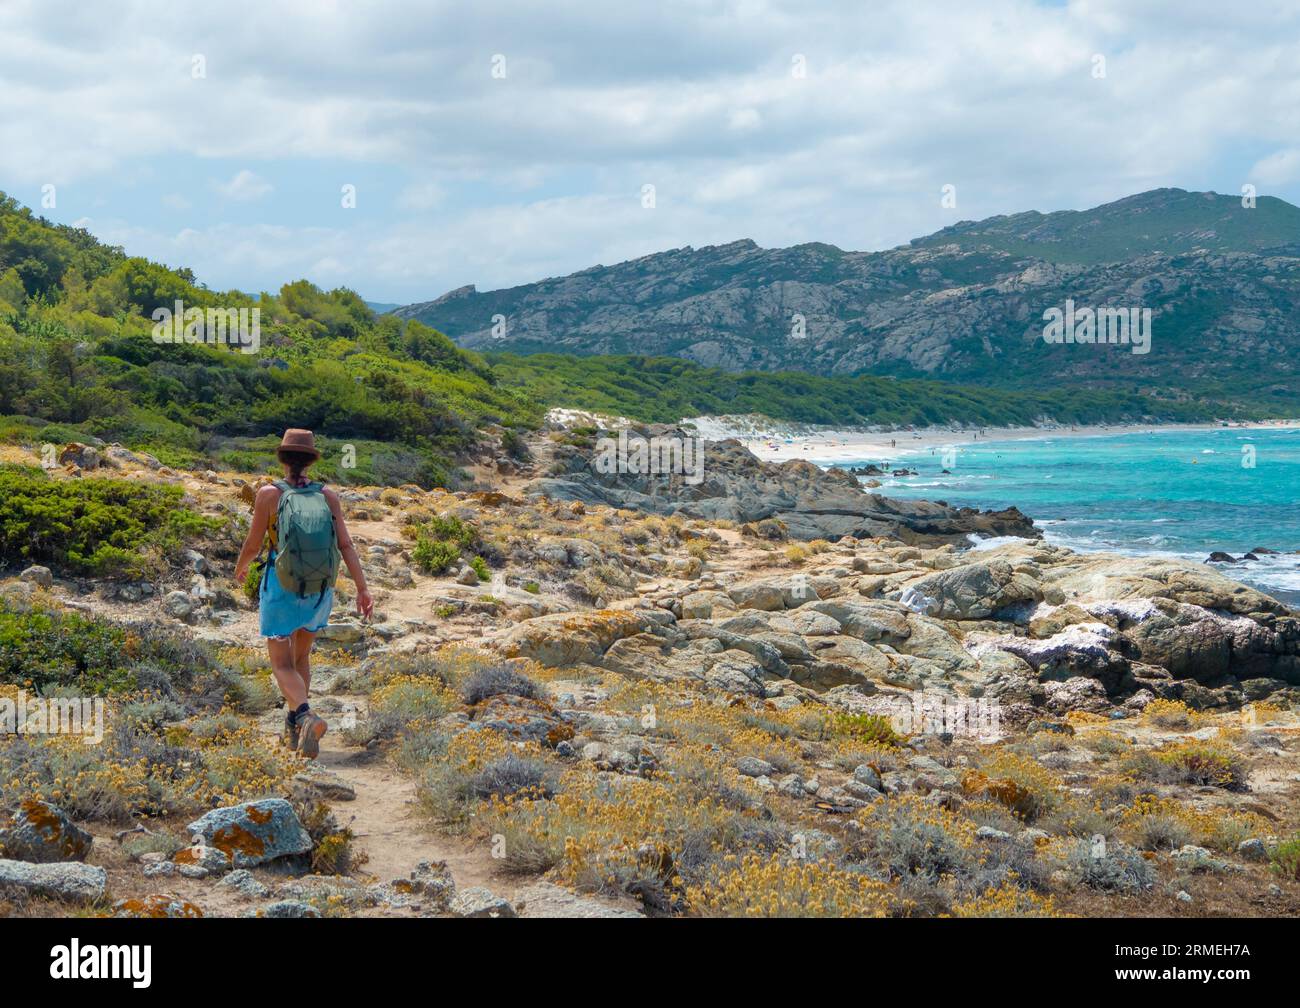 Corsica (Francia) - la Corsica è una grande isola turistica francese nel Mediterraneo con bellissime spiagge. Qui la spiaggia di Ostriconi, Lotu, Saleccia, Roccapina Foto Stock